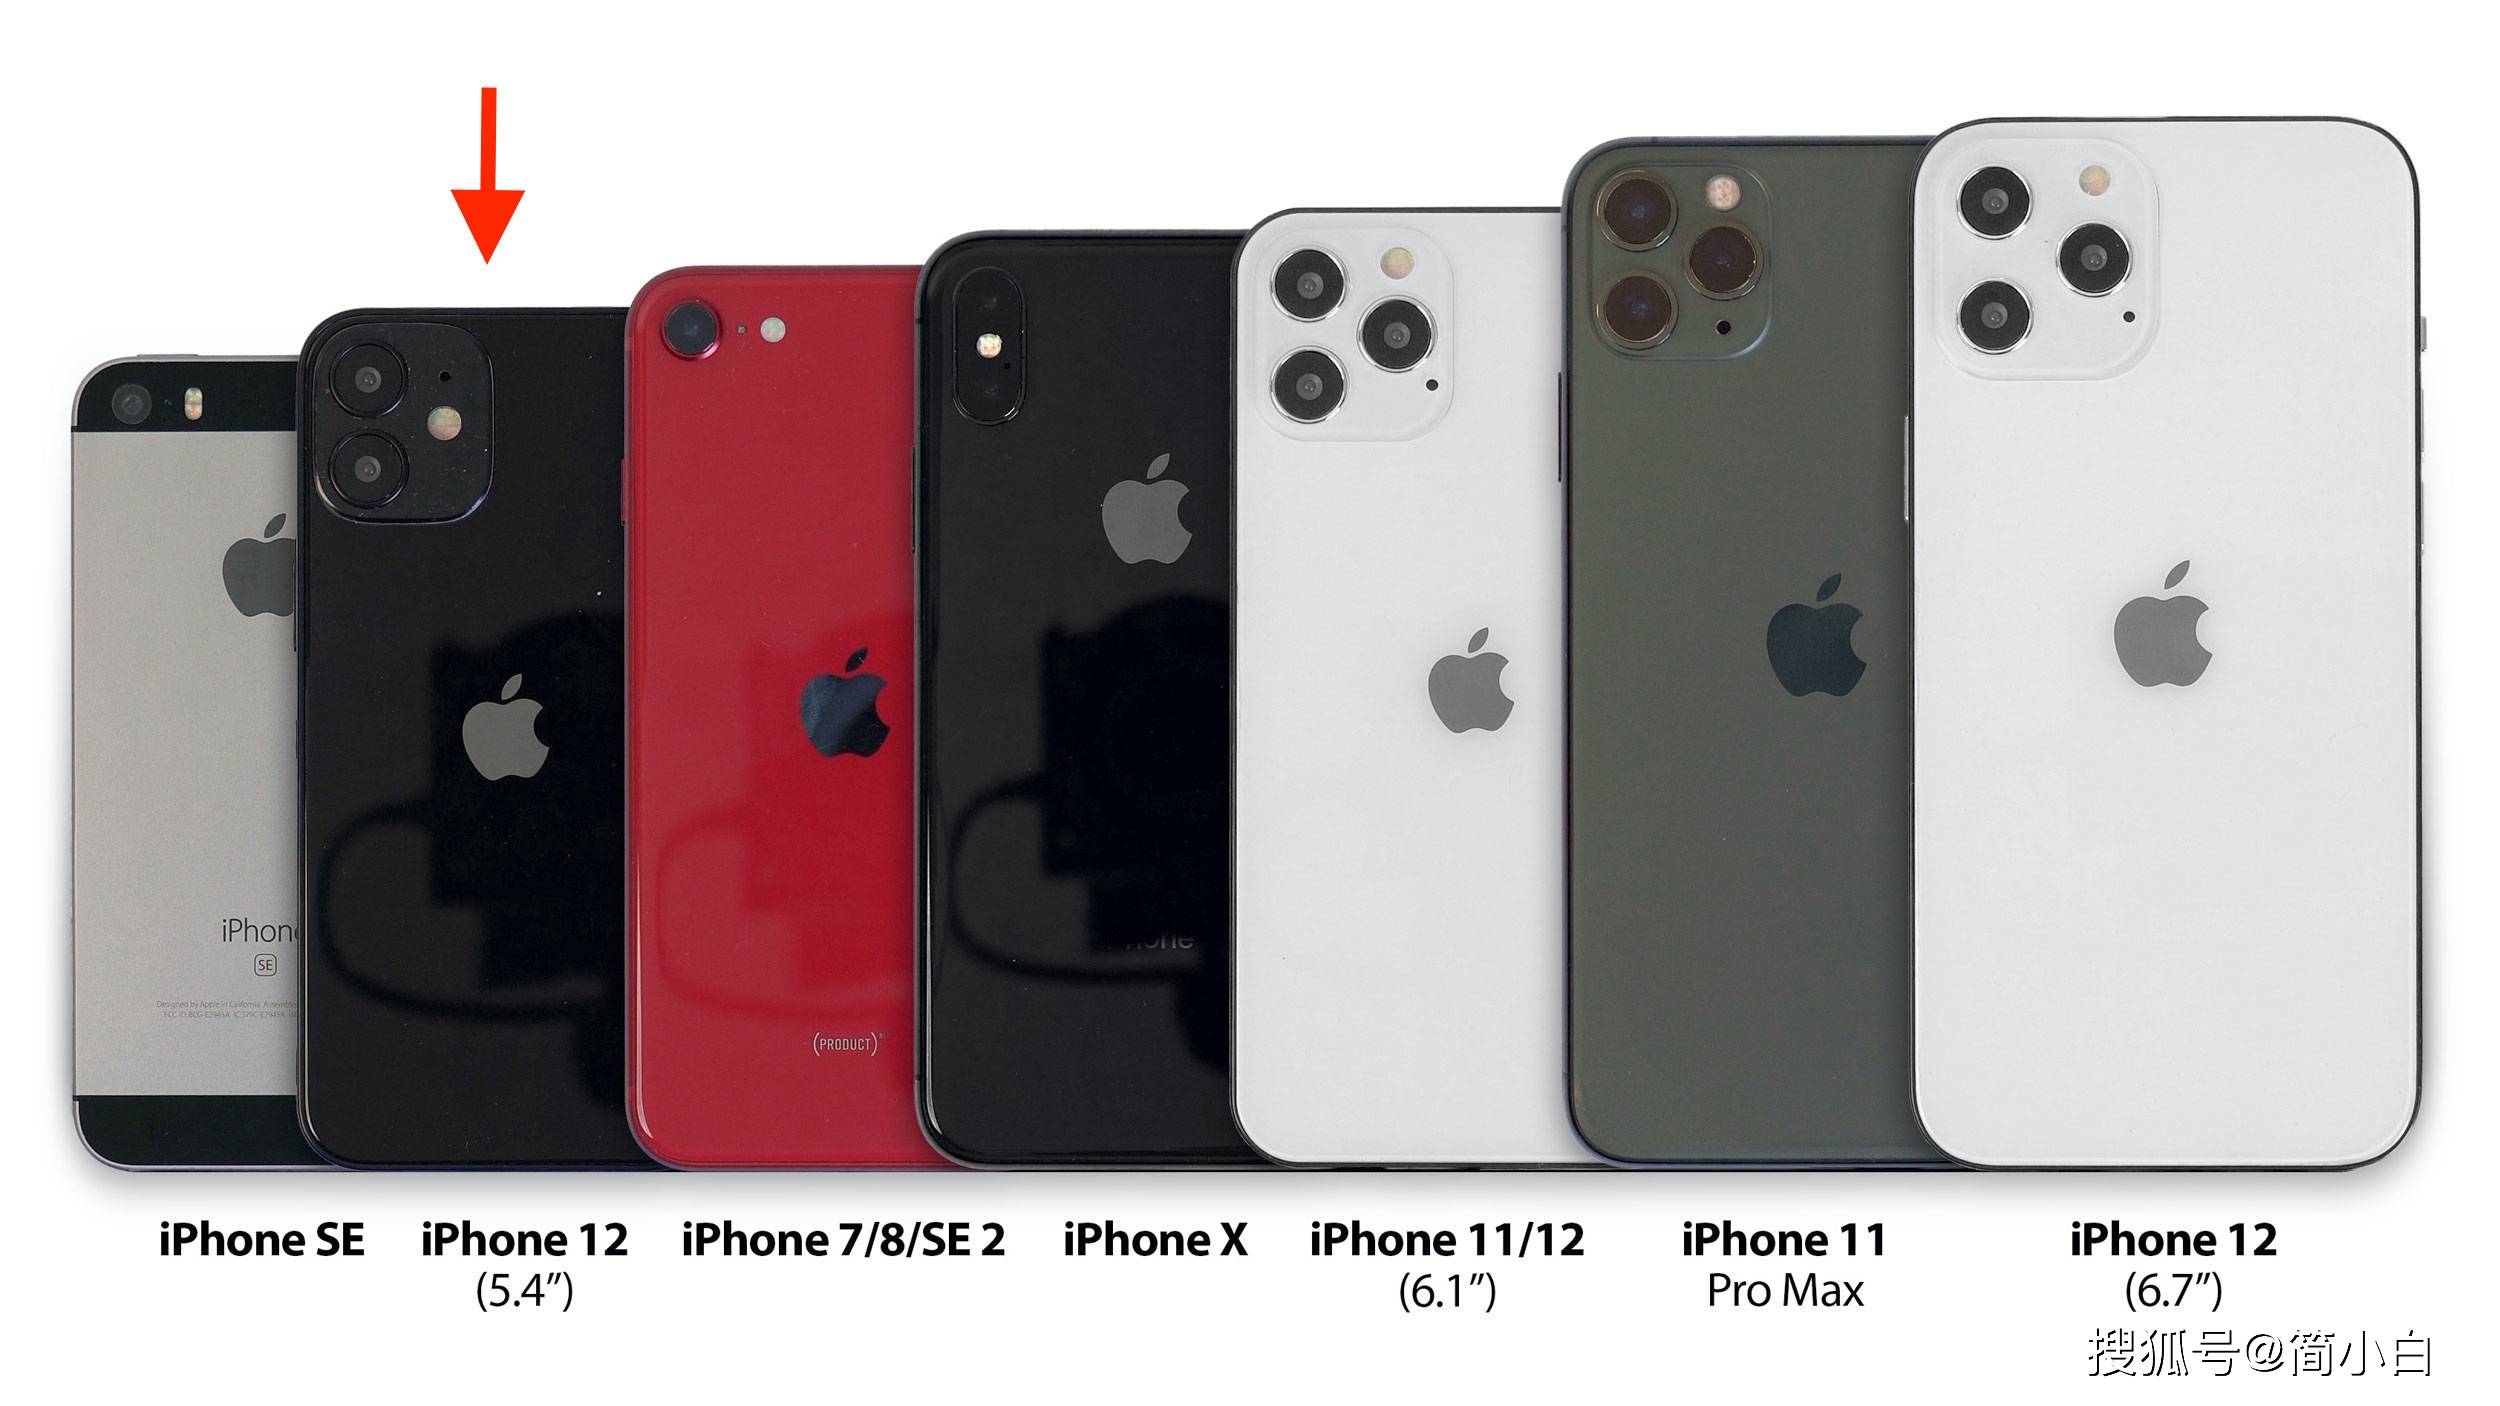 原创iphone 12全系列预测!新增超小尺寸iphone 12 mini